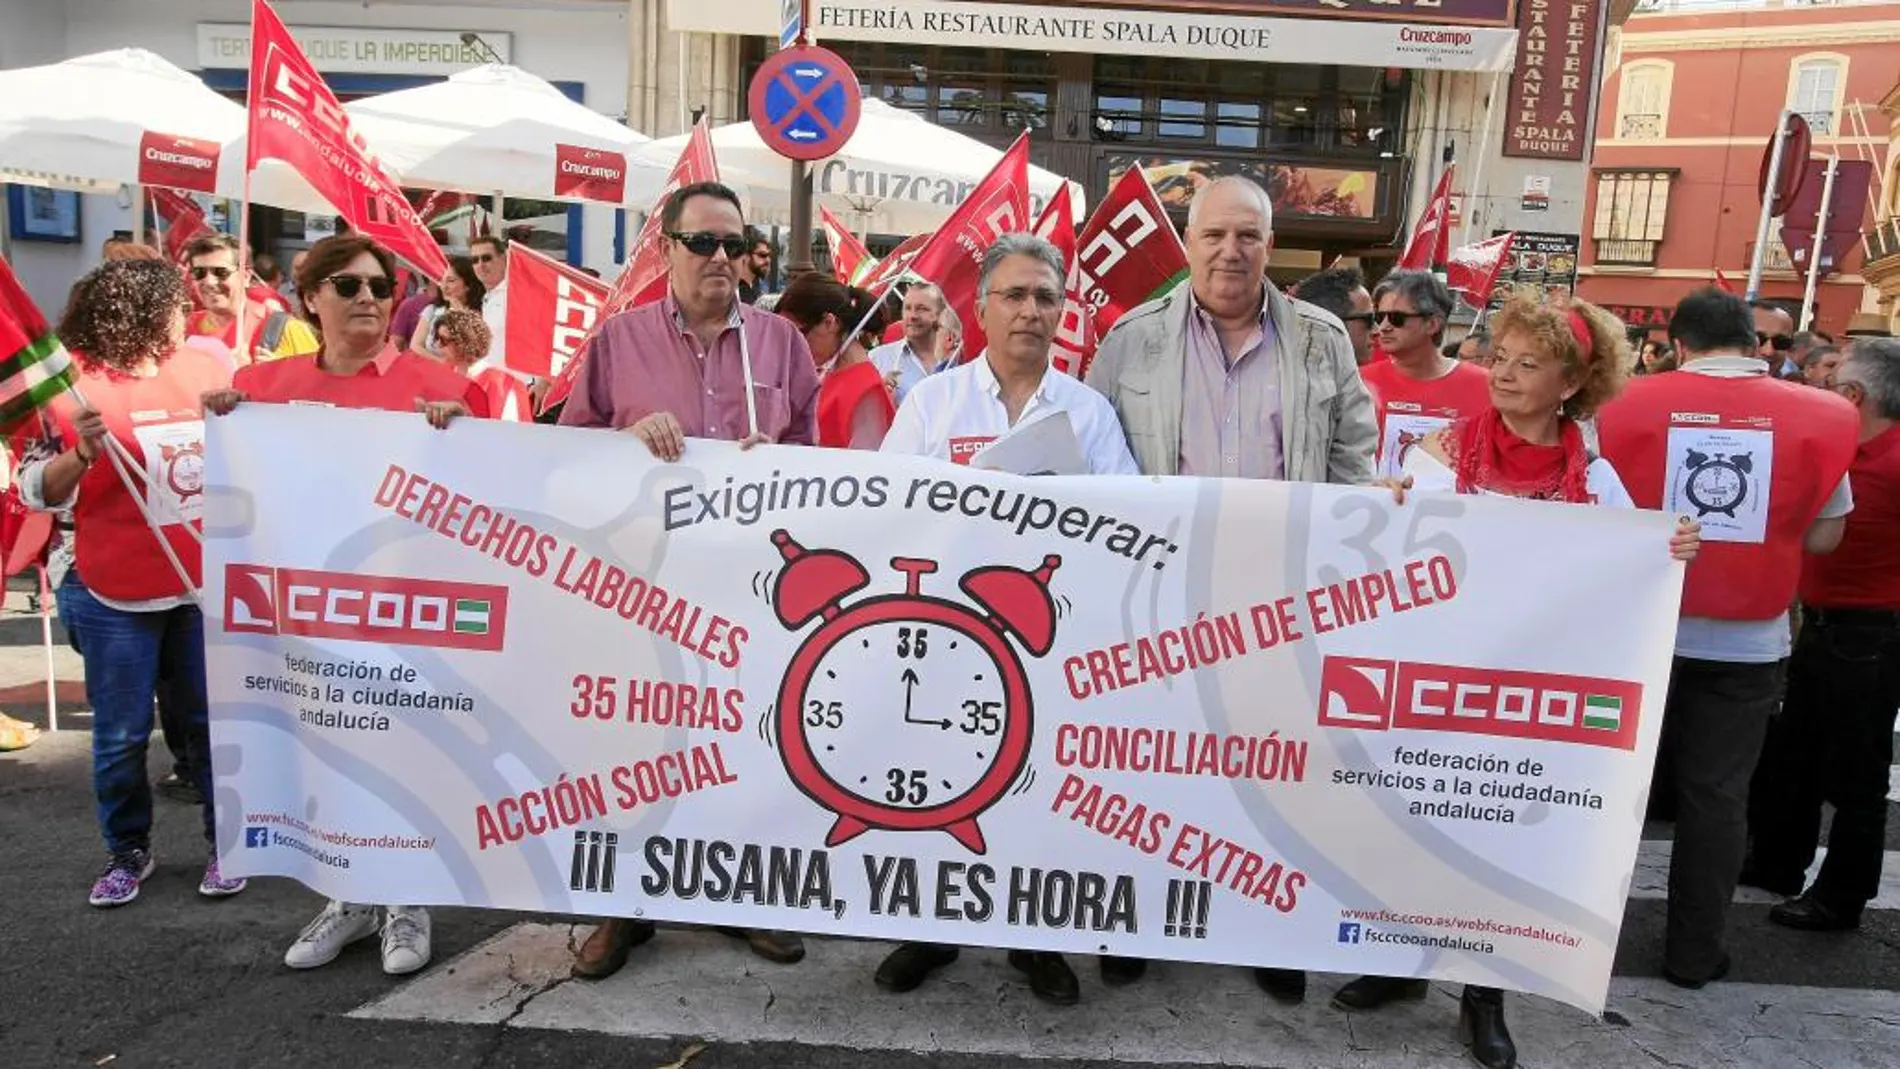 «Exigimos recuperar» es el lema de la campaña iniciada por CC OO para la restitución de derechos laborales